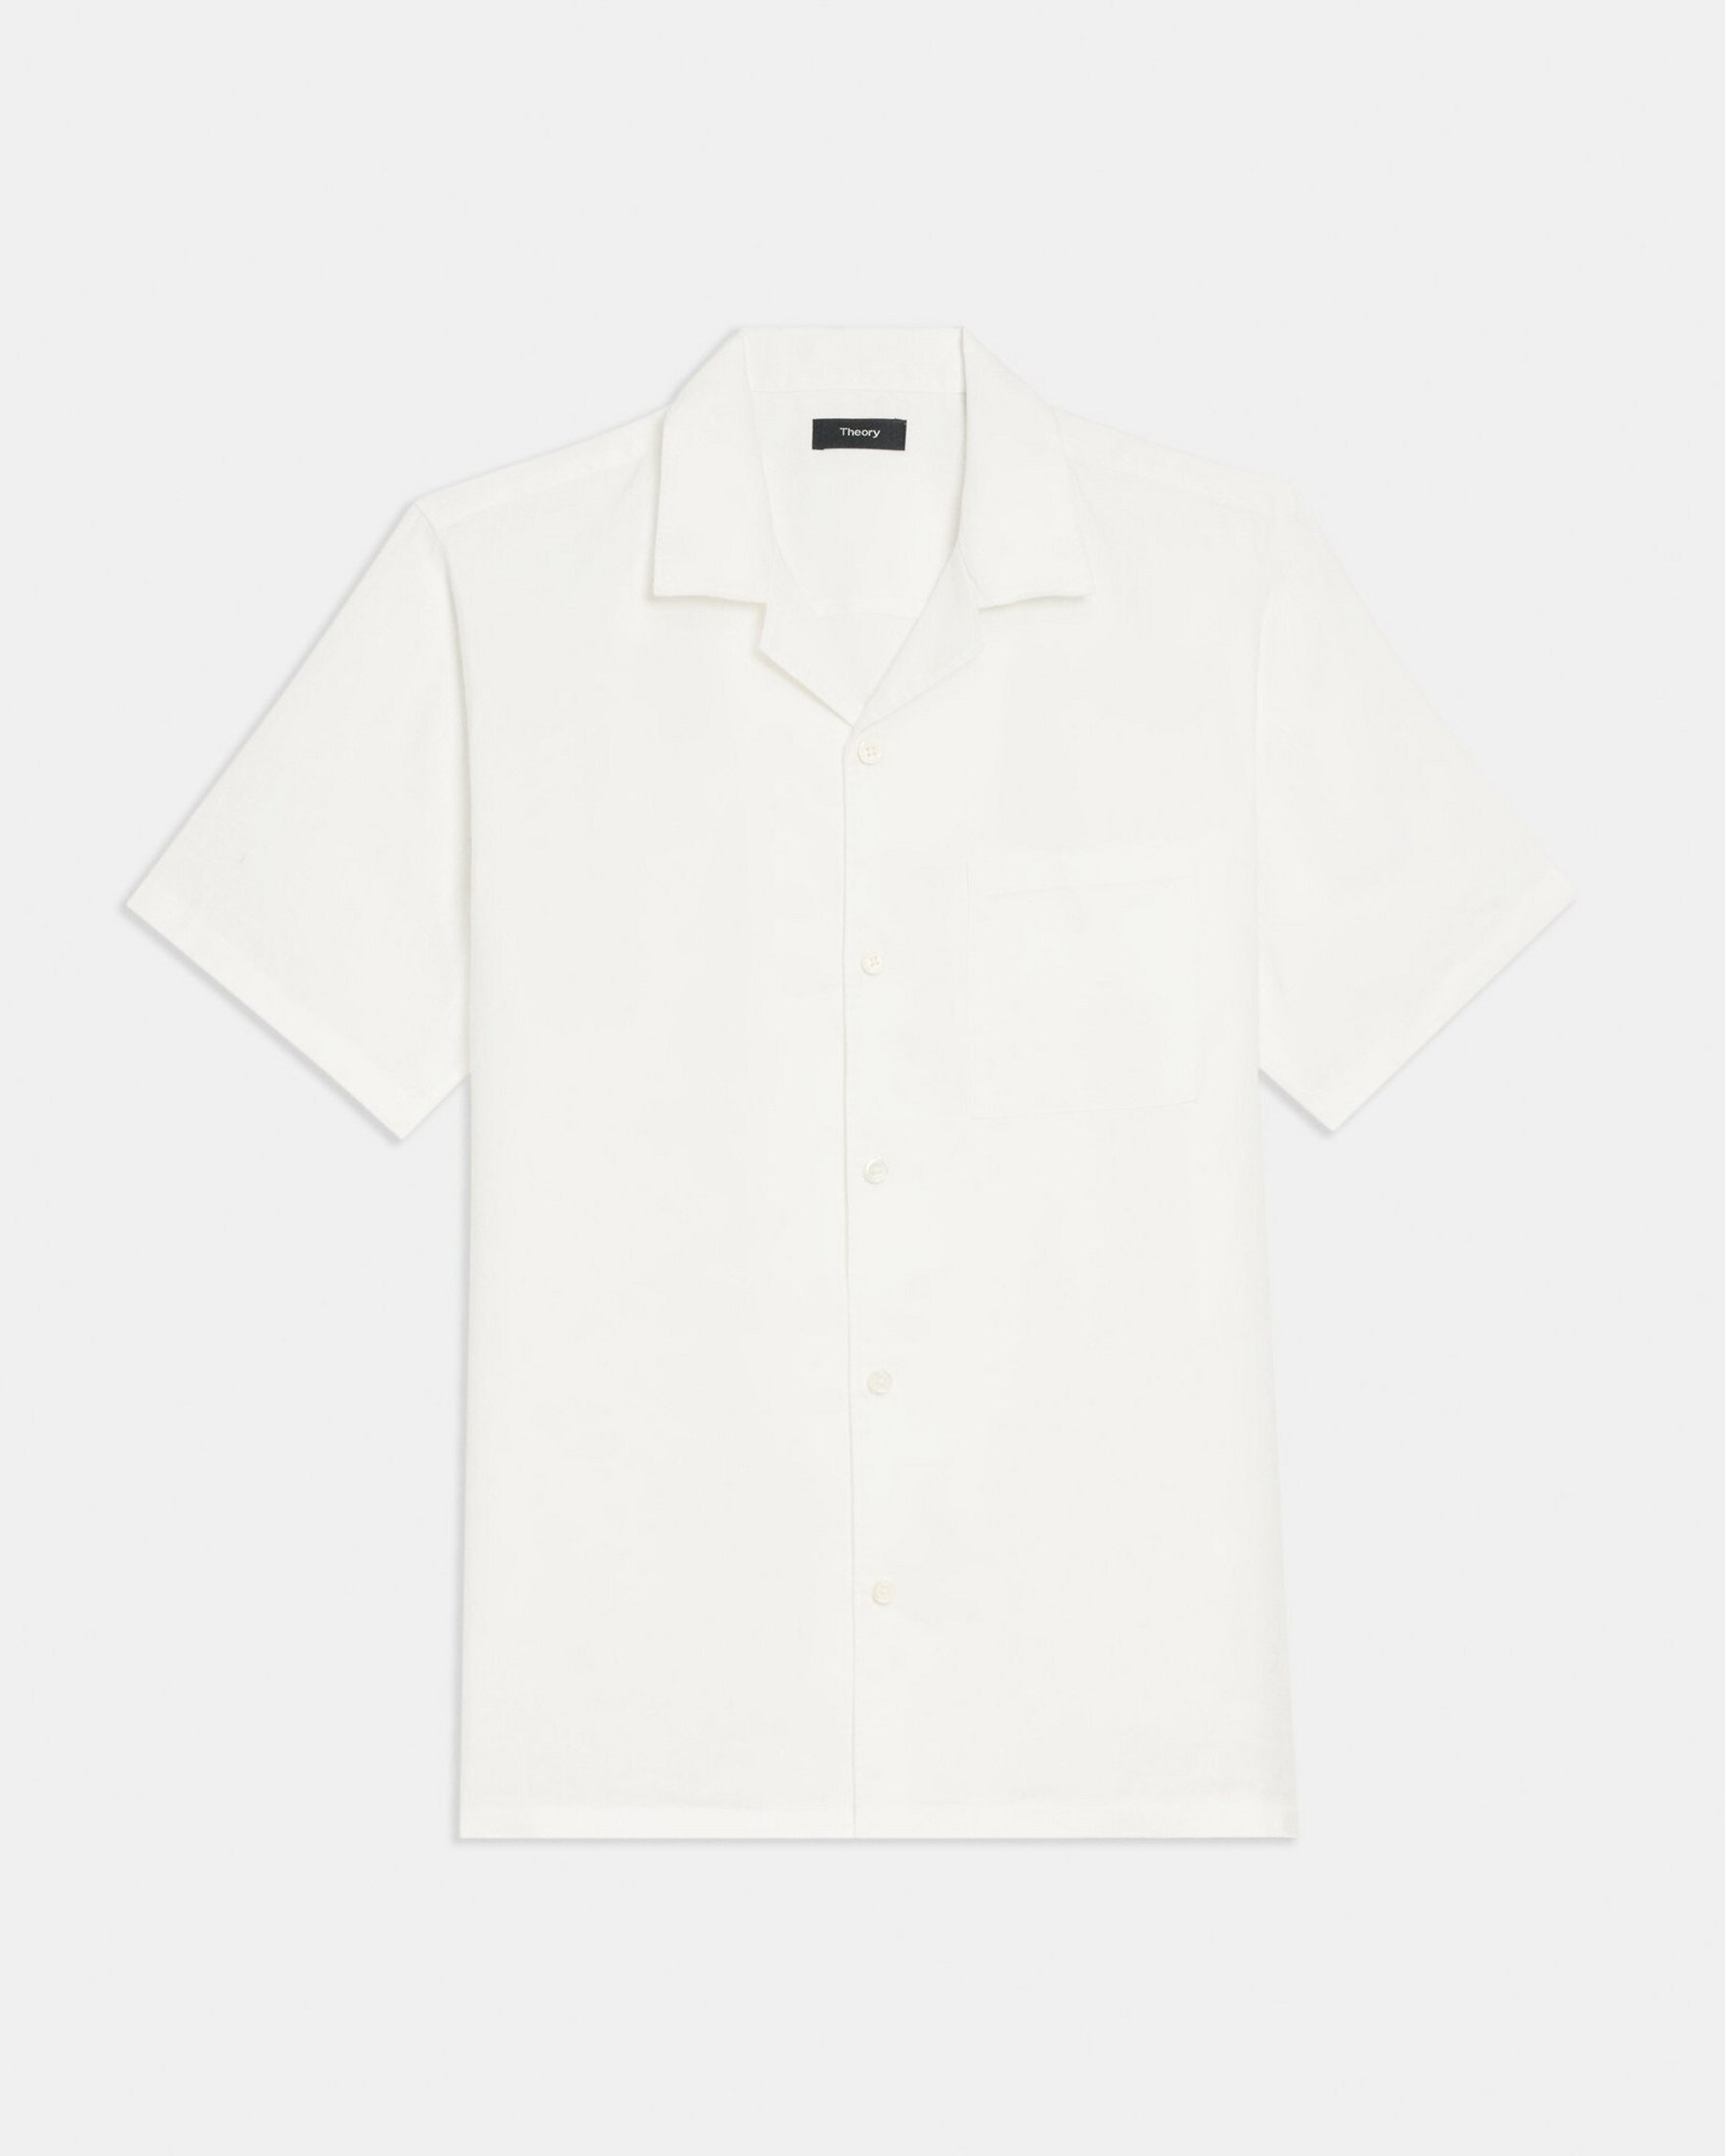 Noll Short-Sleeve Shirt in Relaxed Linen